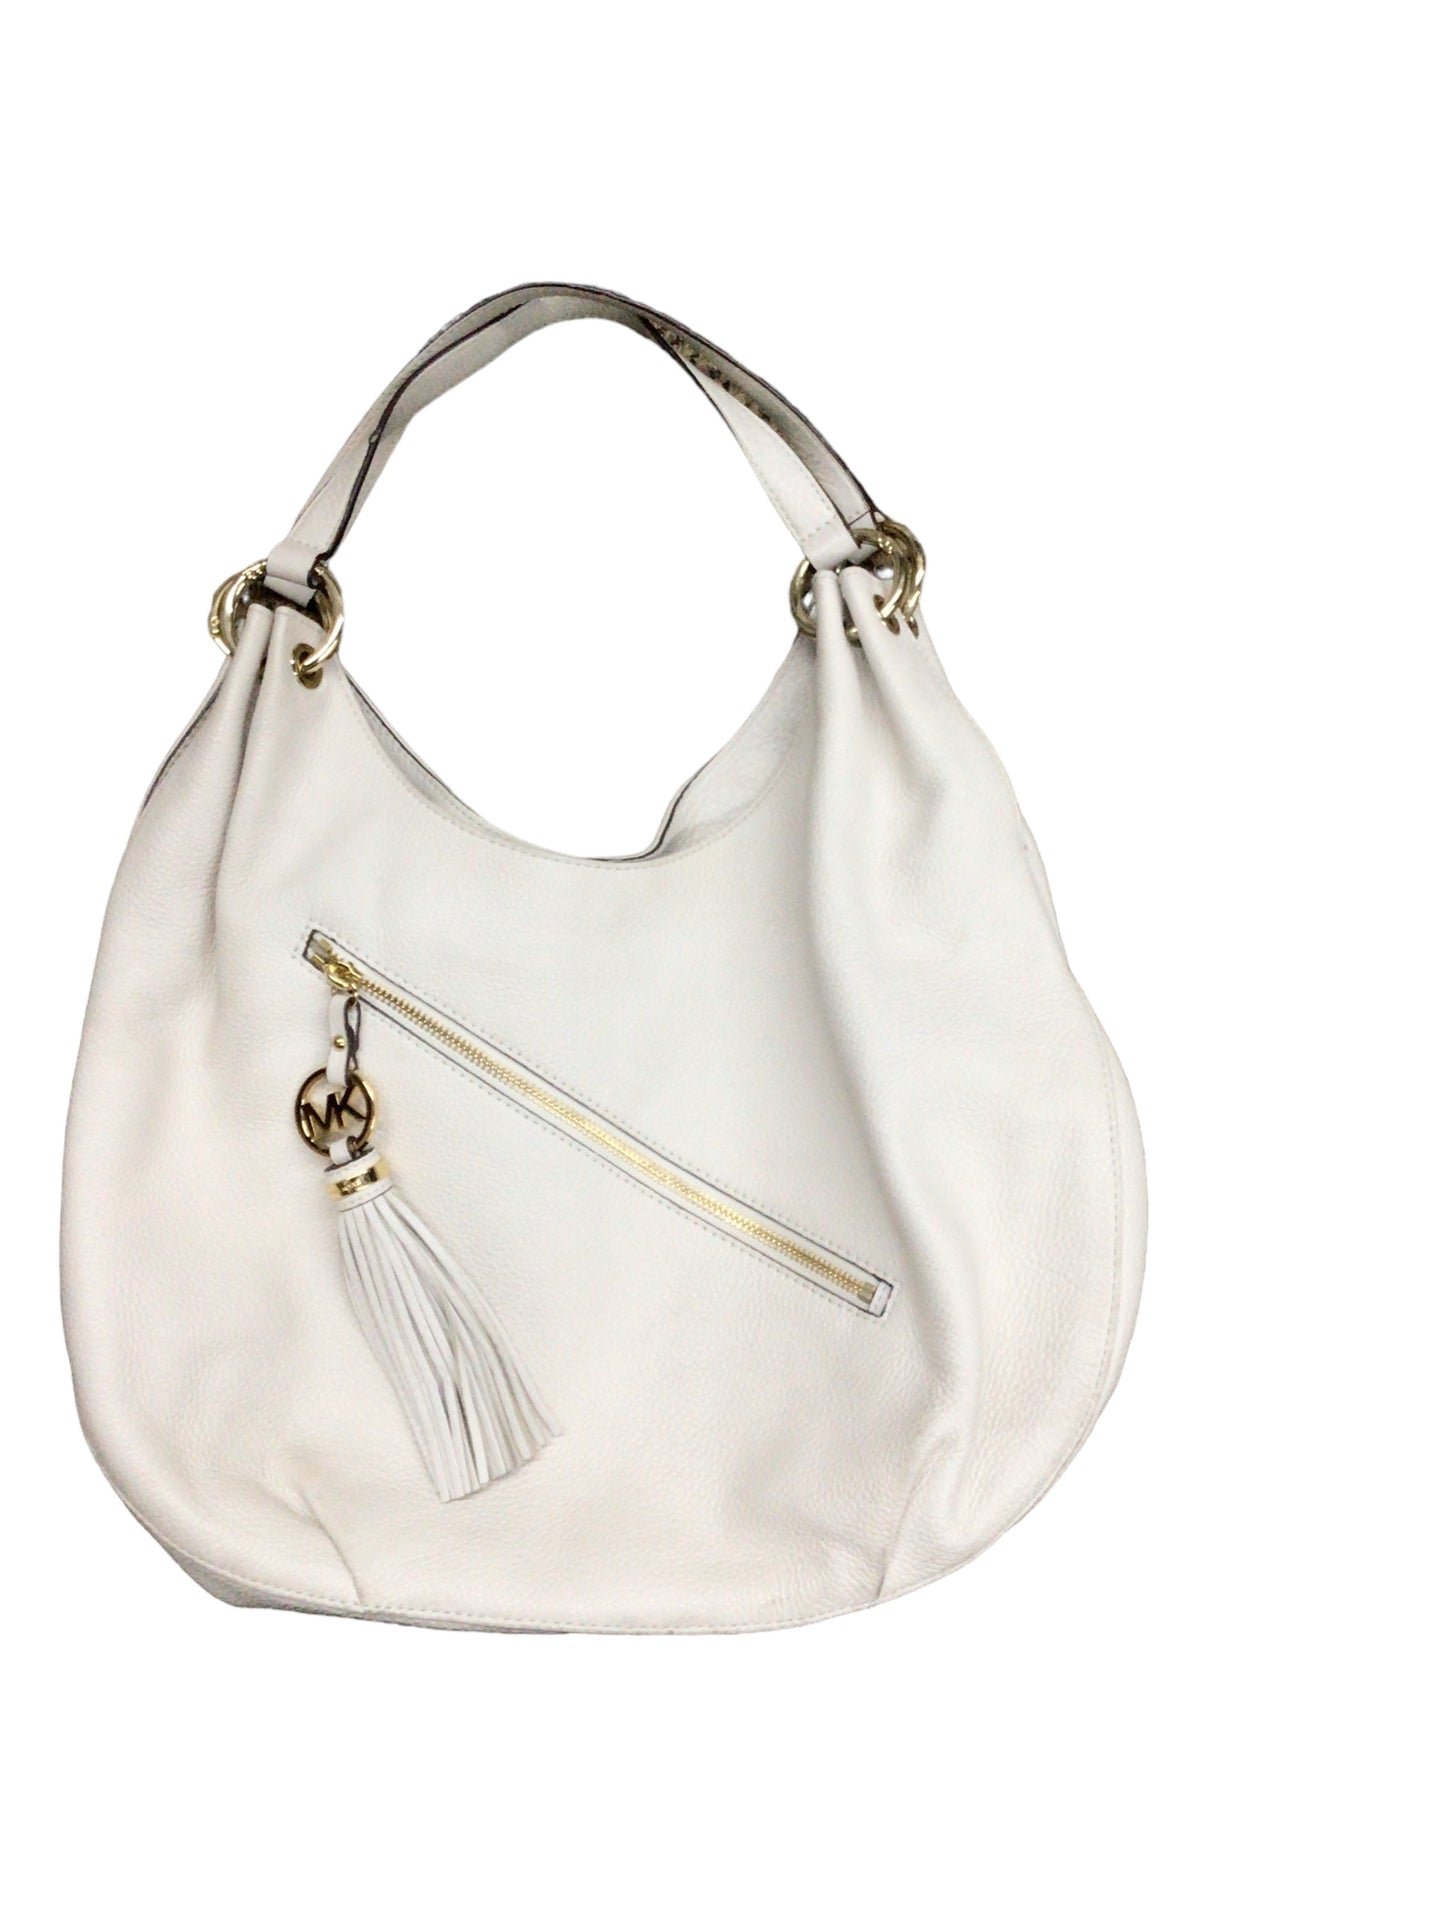 Handbag Designer By Michael Kors O  Size: Large